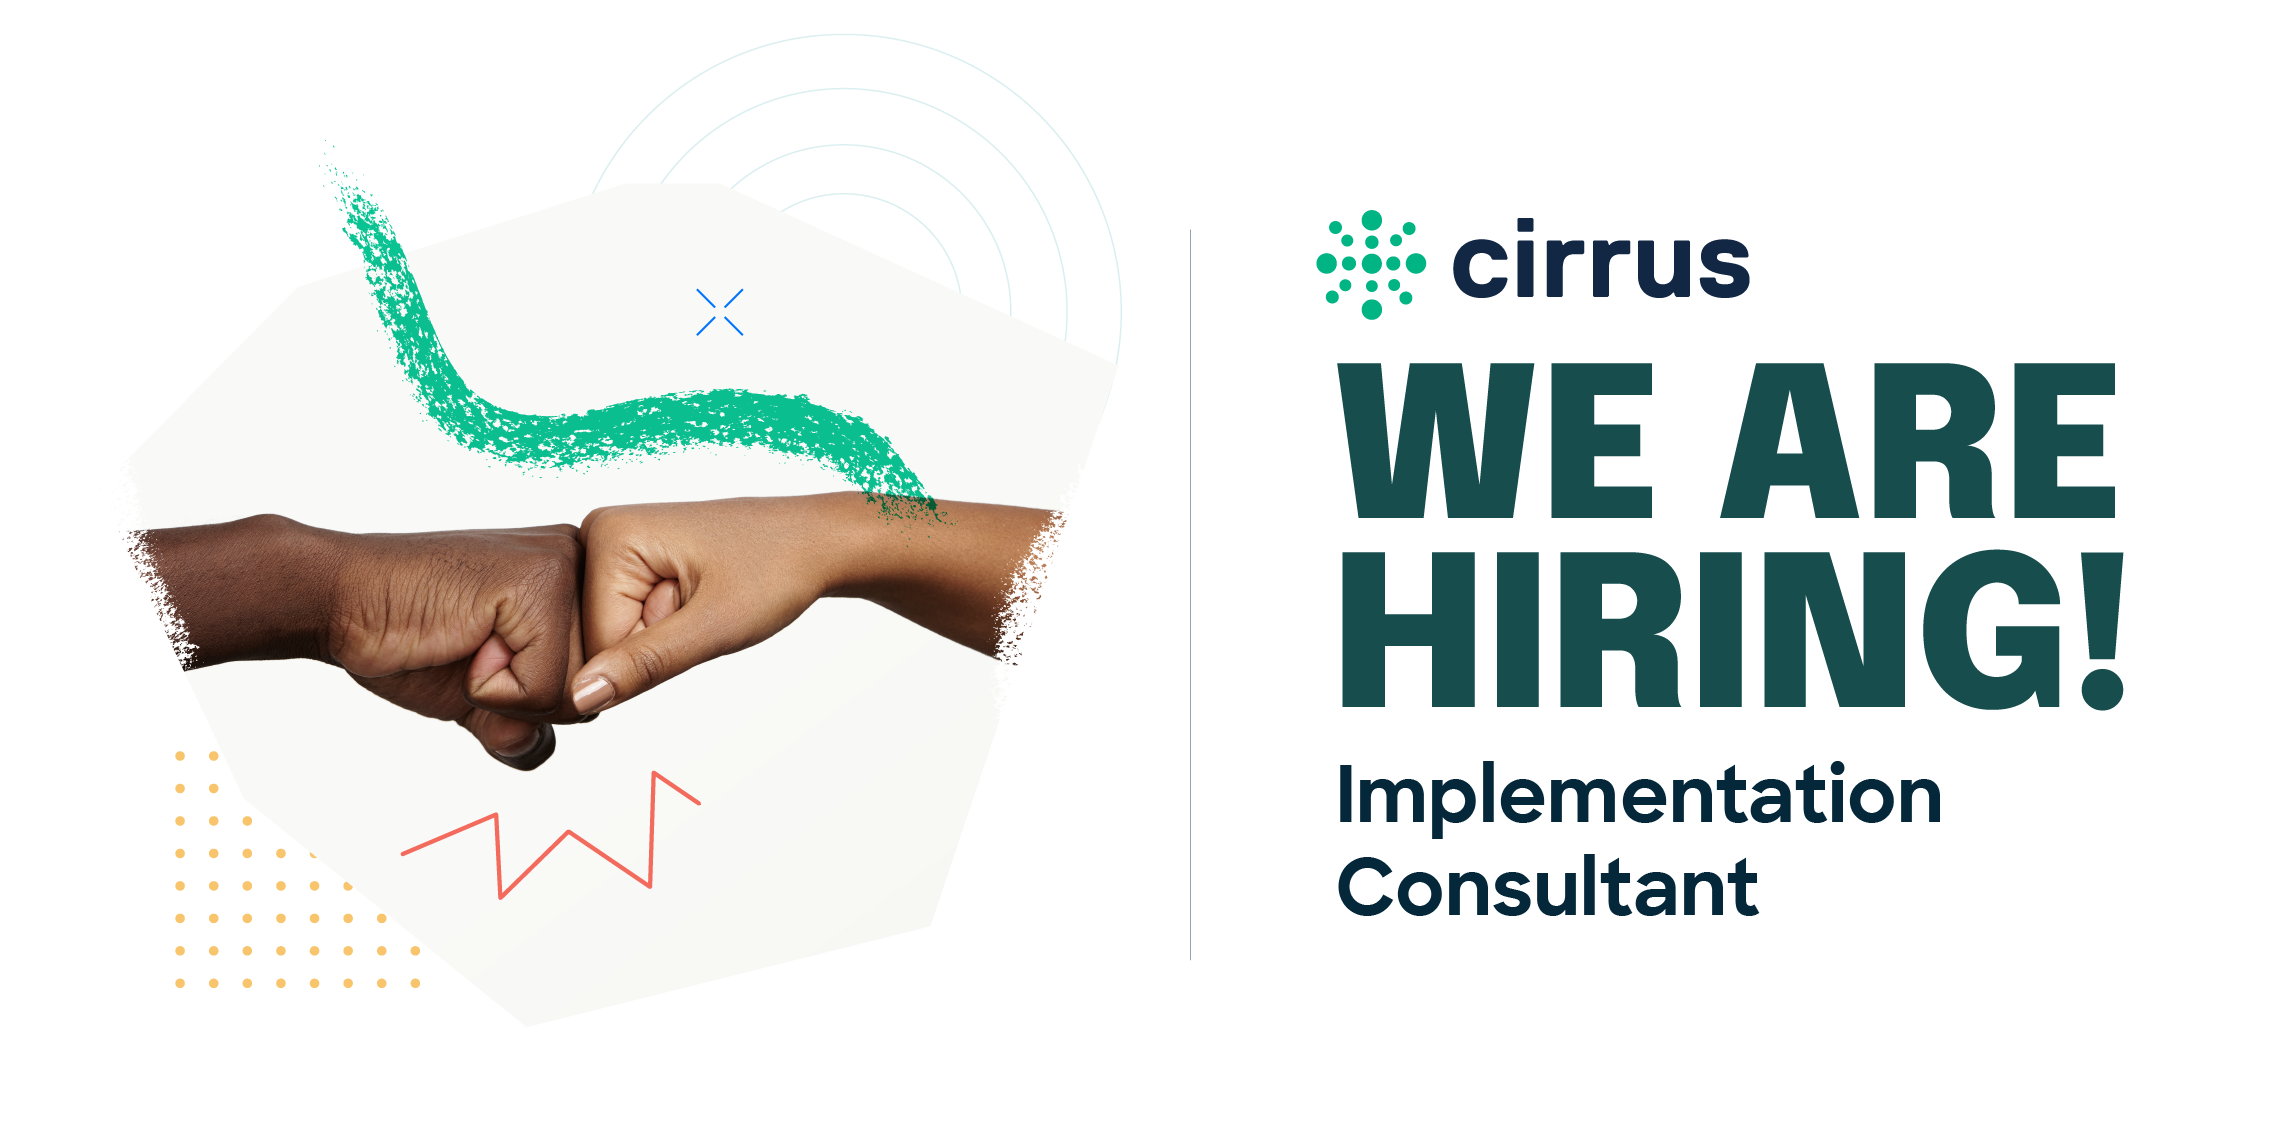 Cirrus implementation consultant